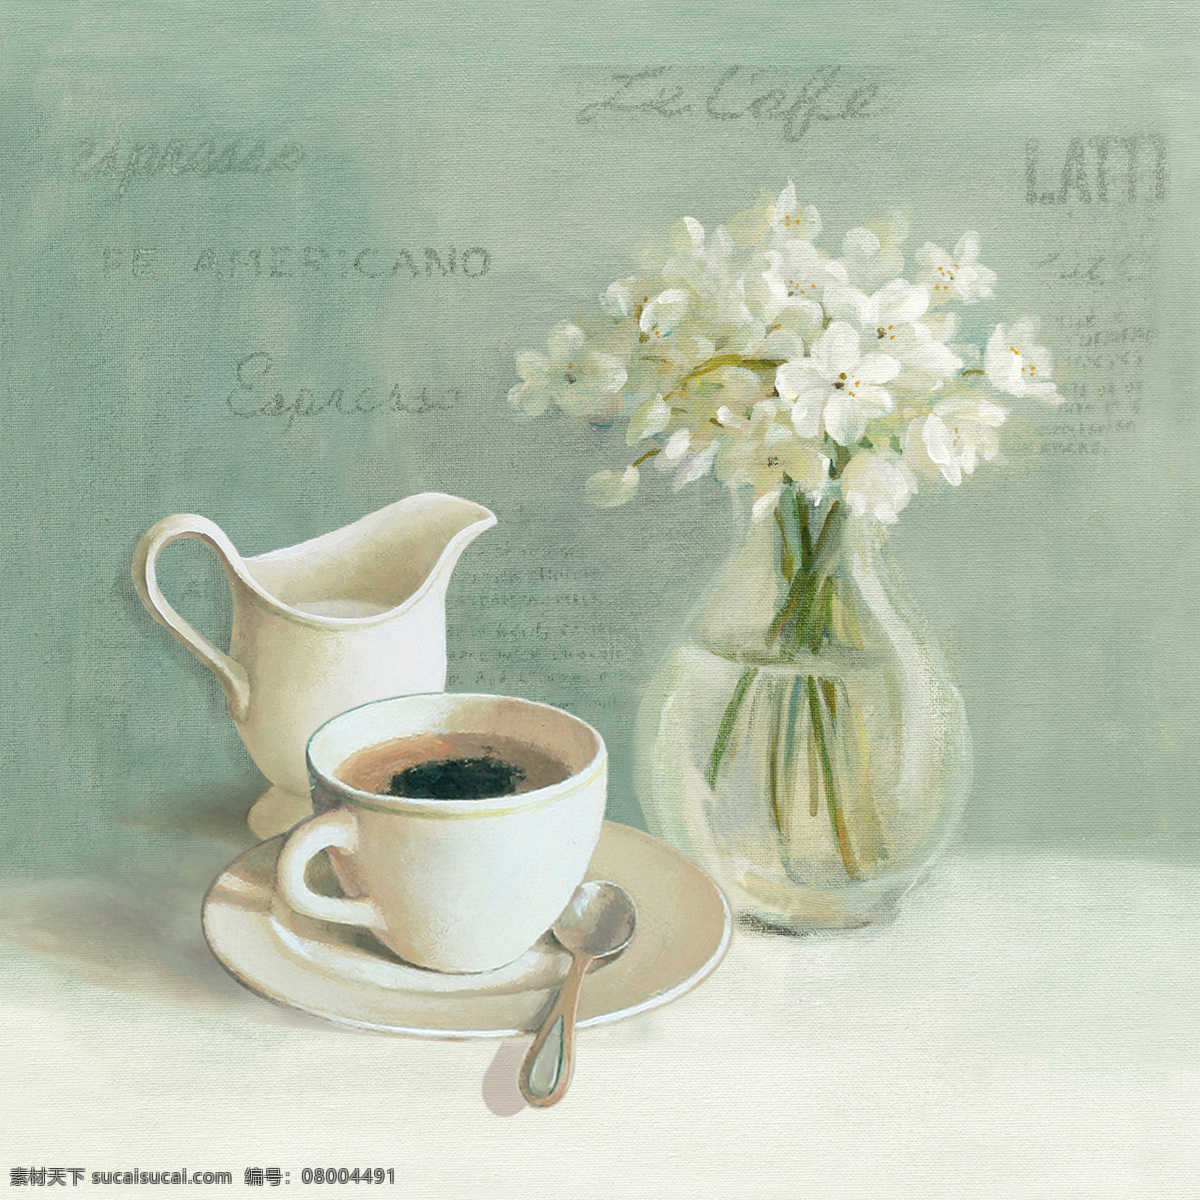 桌面花瓶油画 当代 油画 桌面 花瓶 咖啡杯 文化艺术 绘画书法